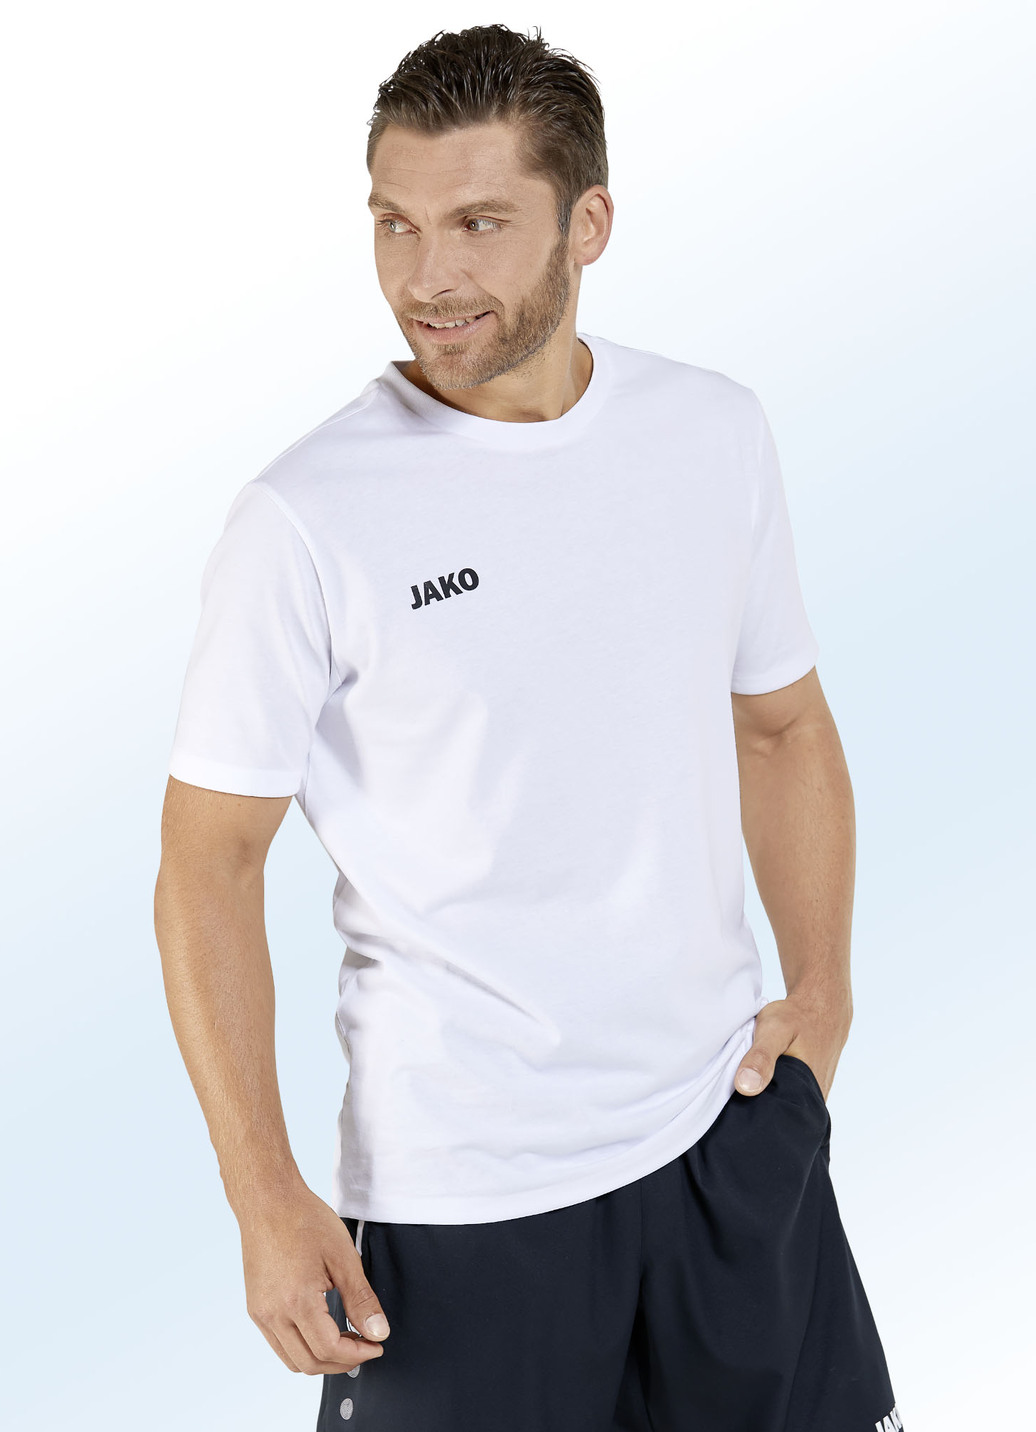 Doppelpack Shirt von "Jako" in 6 Farben, Größe XL (52/54), Weiss-Weiss von Jako